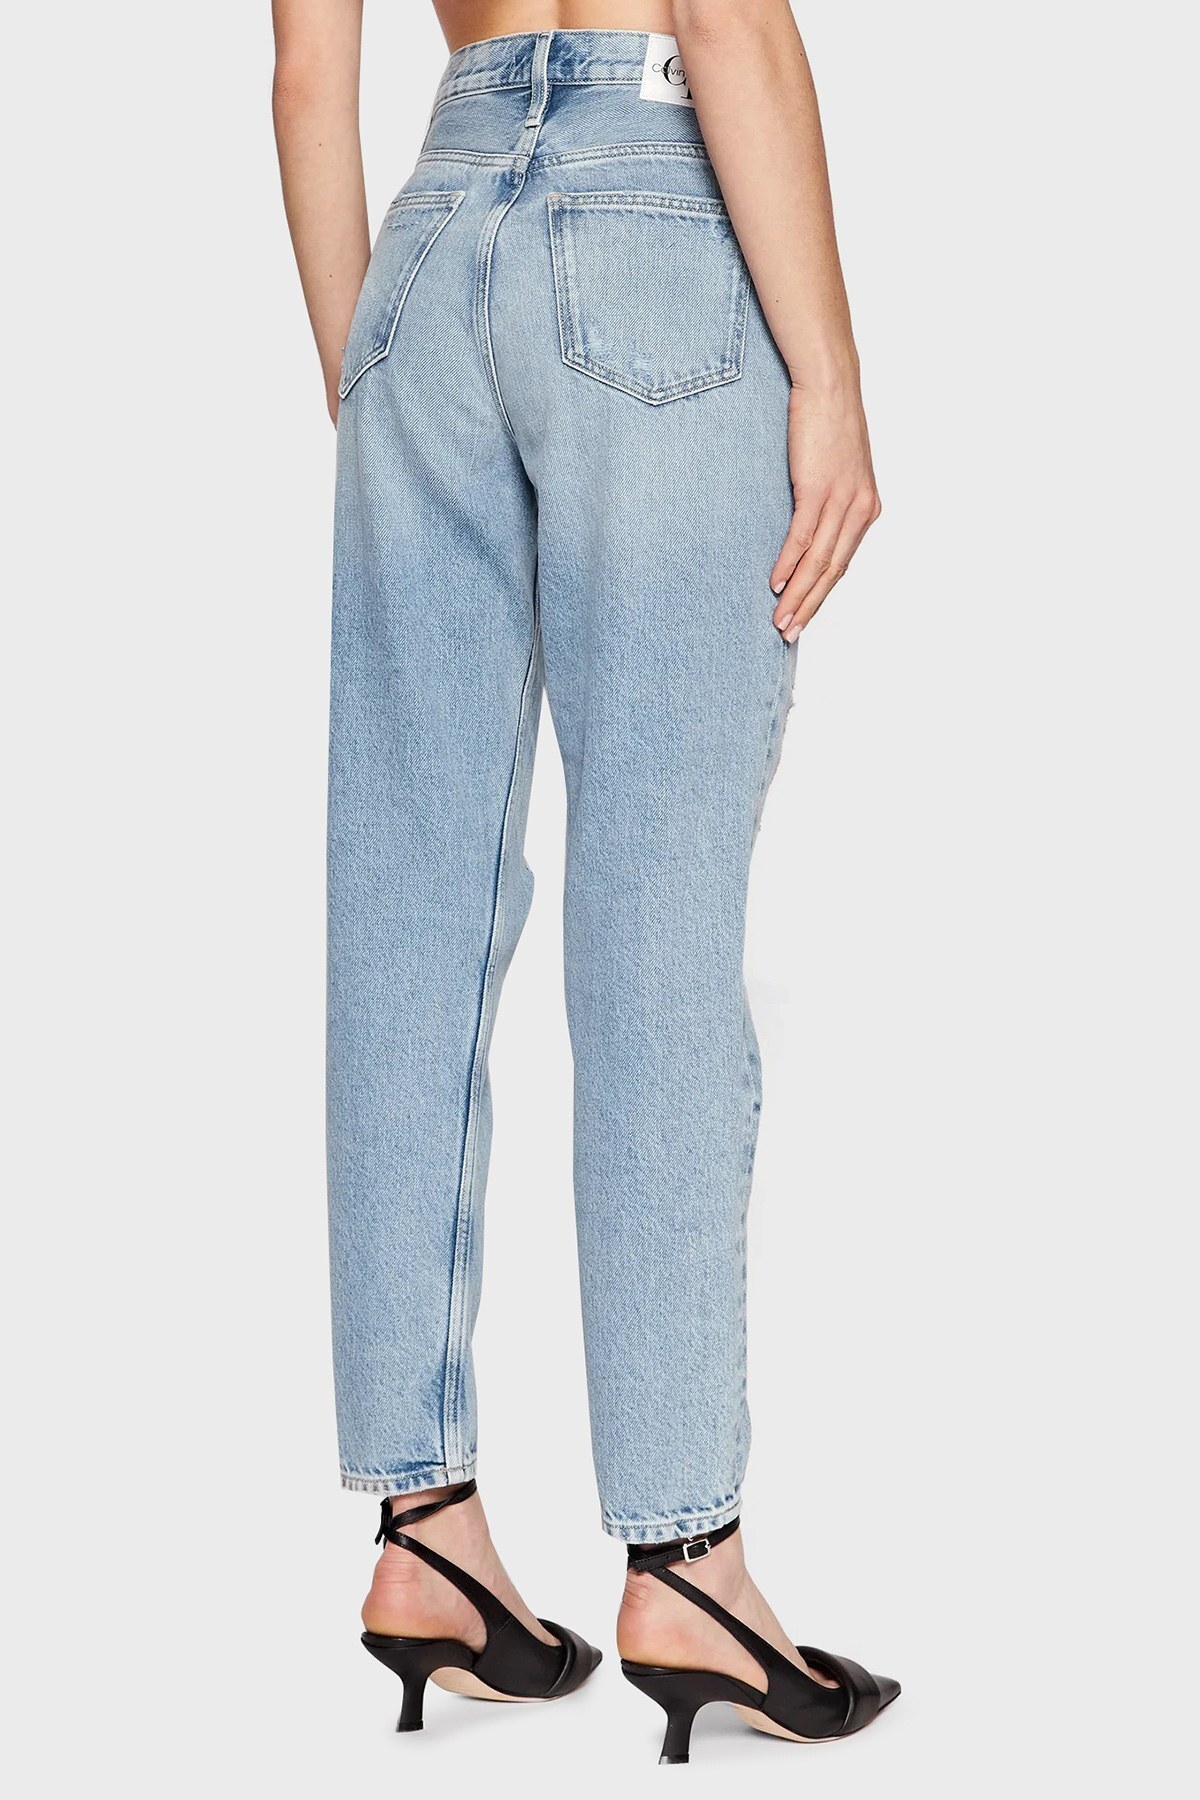 Calvin Klein Yüksek Bel Pamuklu Daralan Paça Mom Jeans Bayan Kot Pantolon J20J218512 1A4 LACİVERT